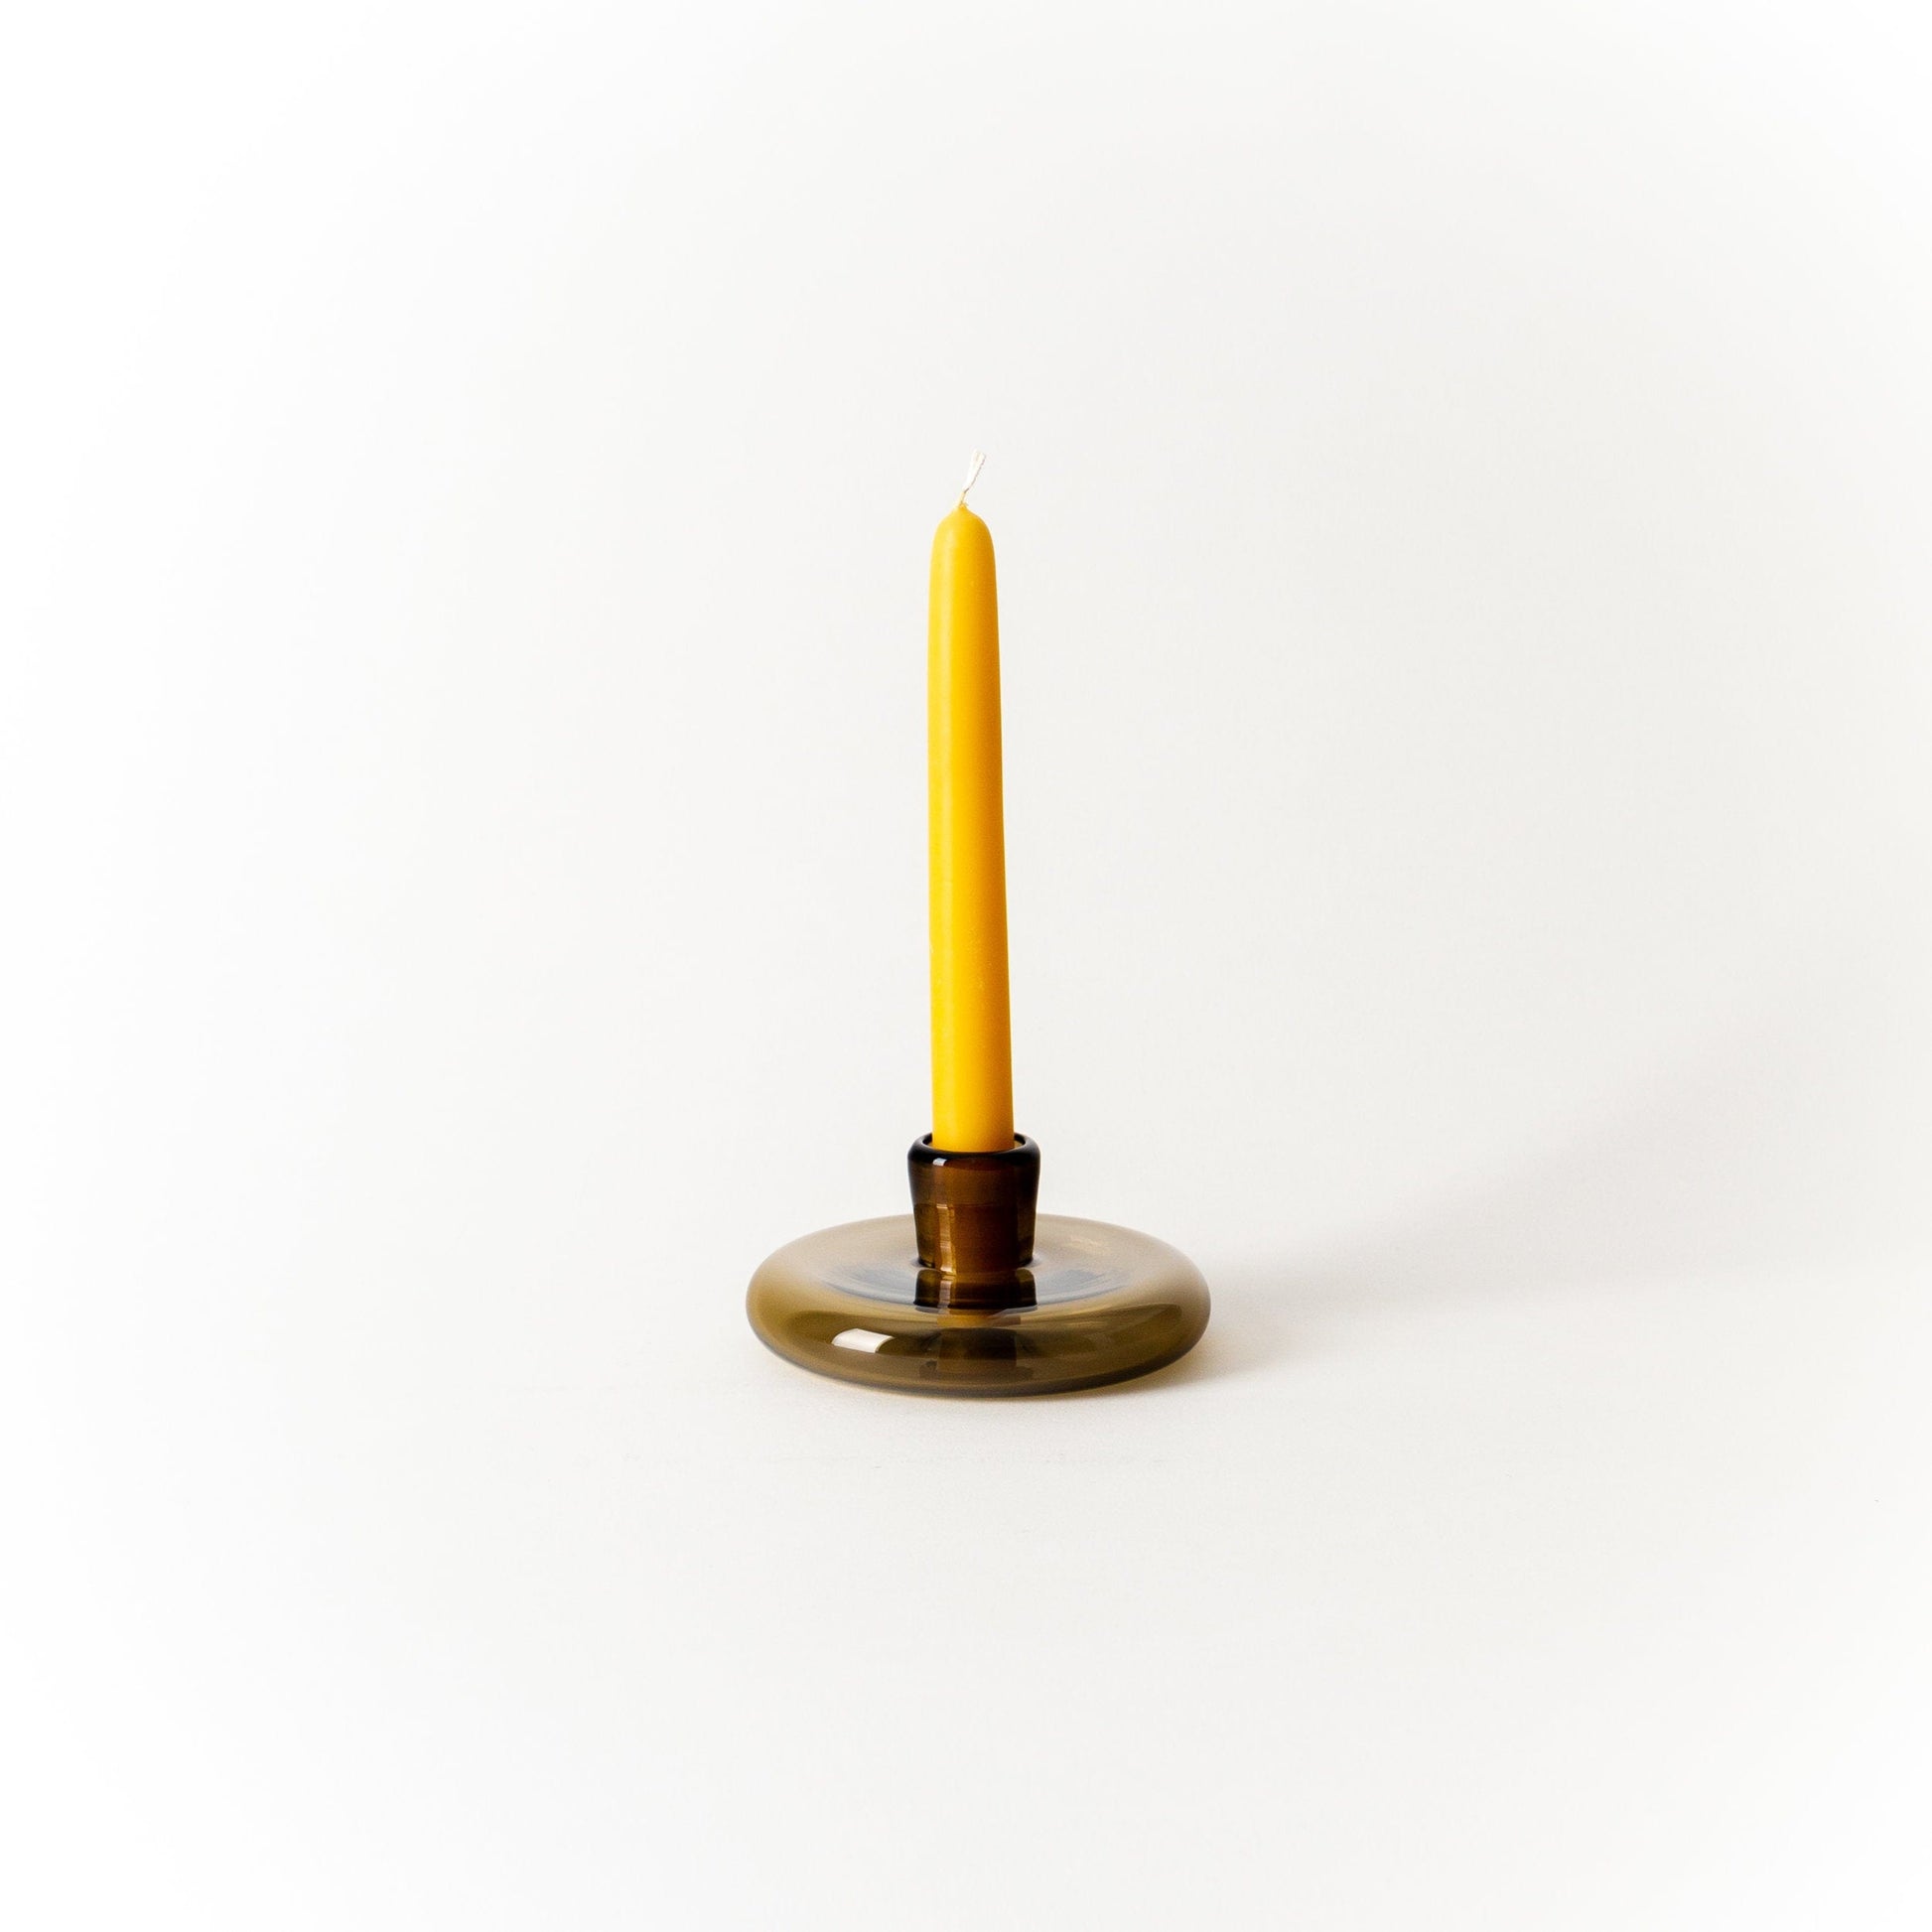 Wheat Handblown Glass Candlestick Holder